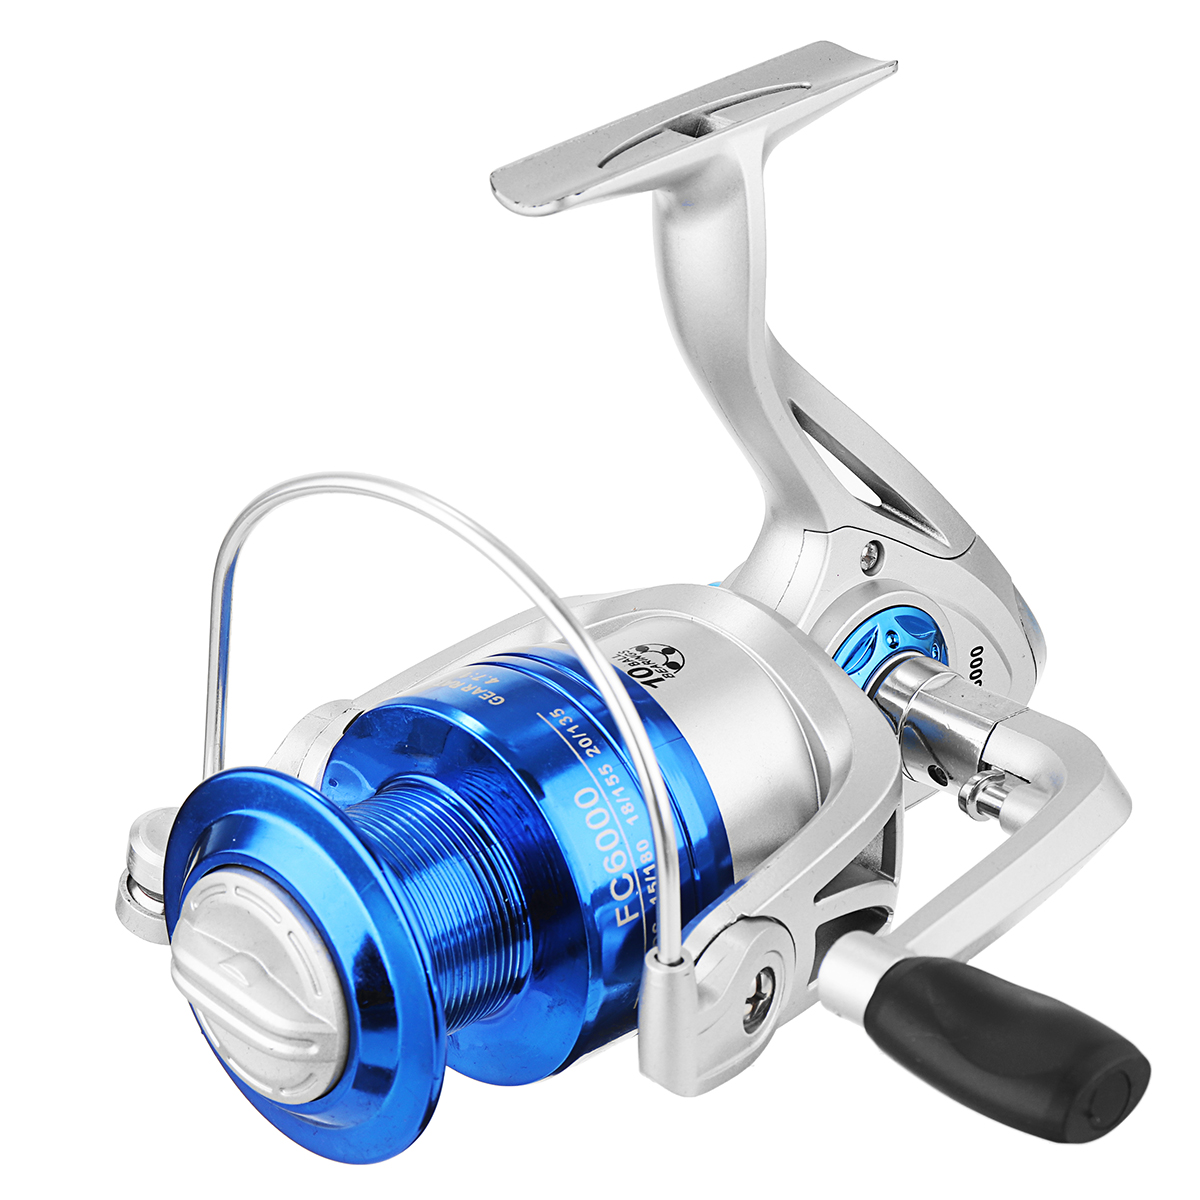 Катушка Blue Runner 60 Quantum. Катушка рыболовная Vit Fishing 6000. Fishing Reel kr6000. Fishing Reel pa3500.